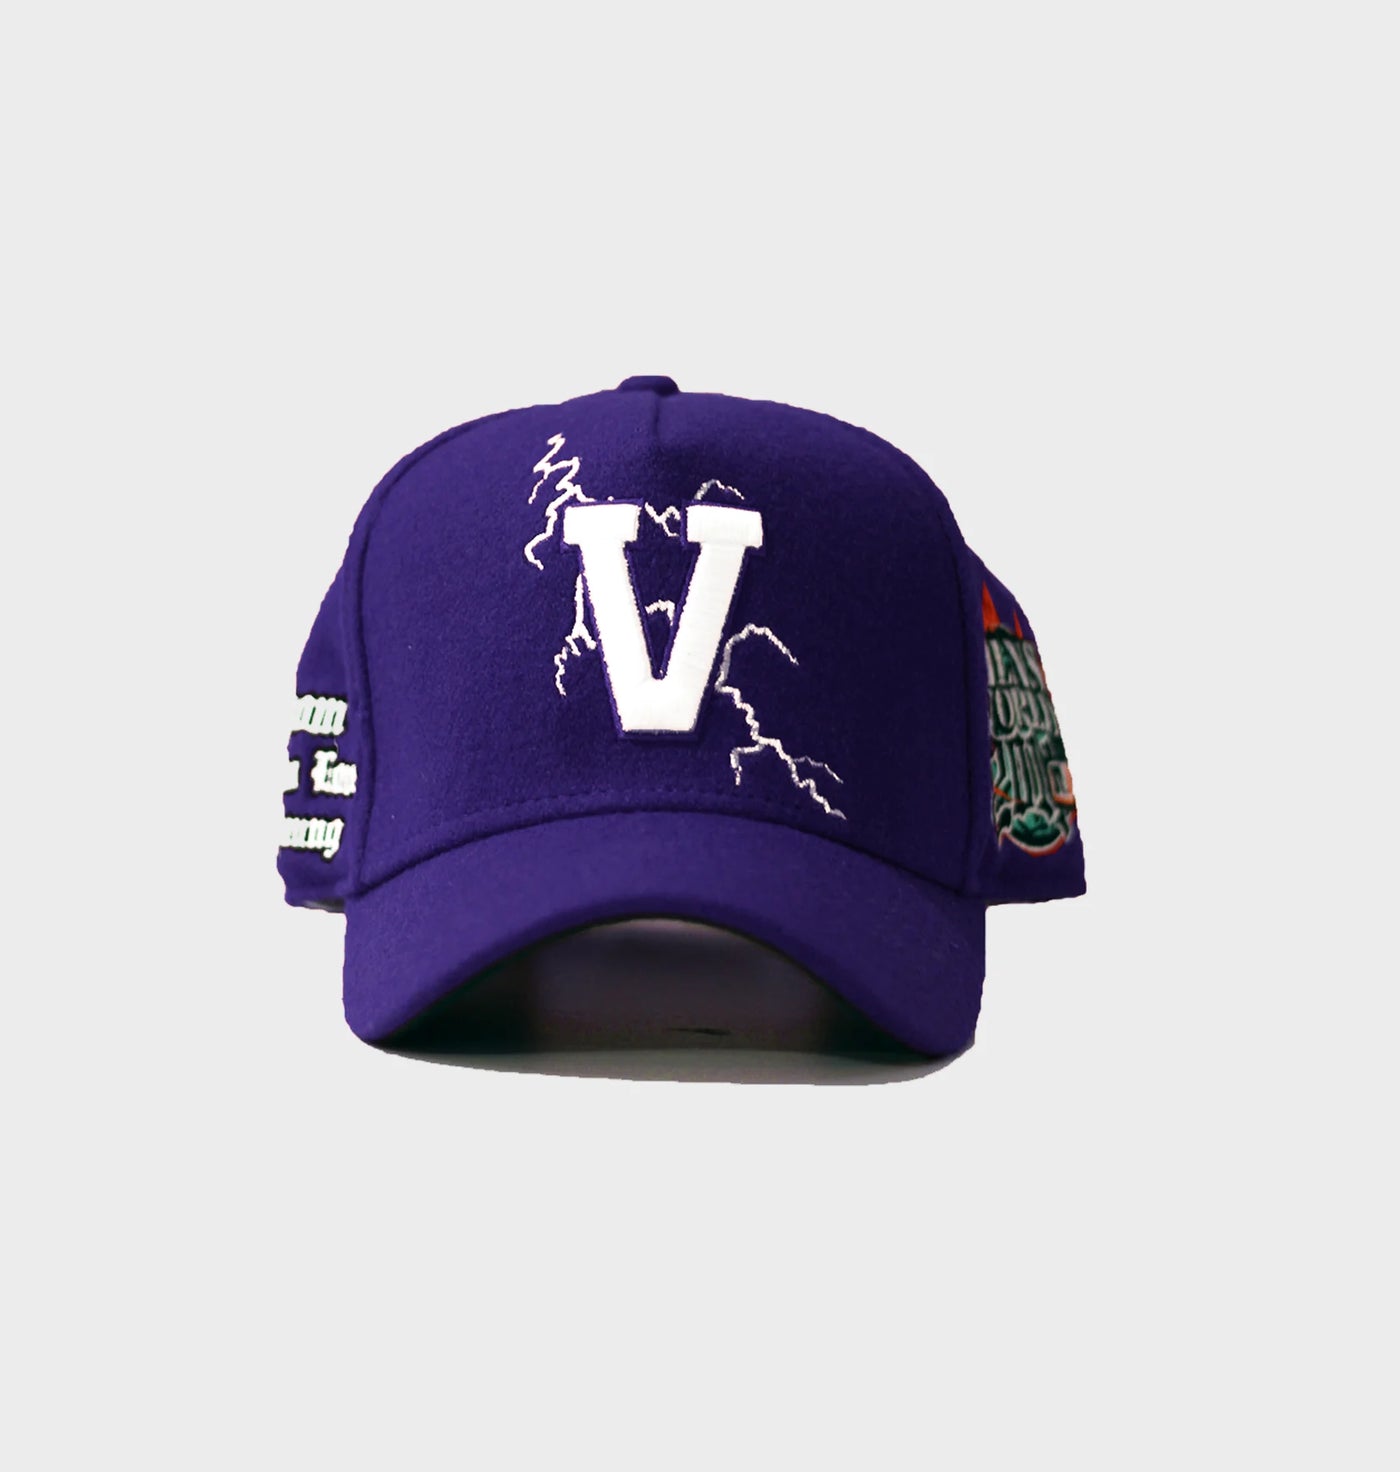 VILLIAN V-LIGHTING PURPLE HAT